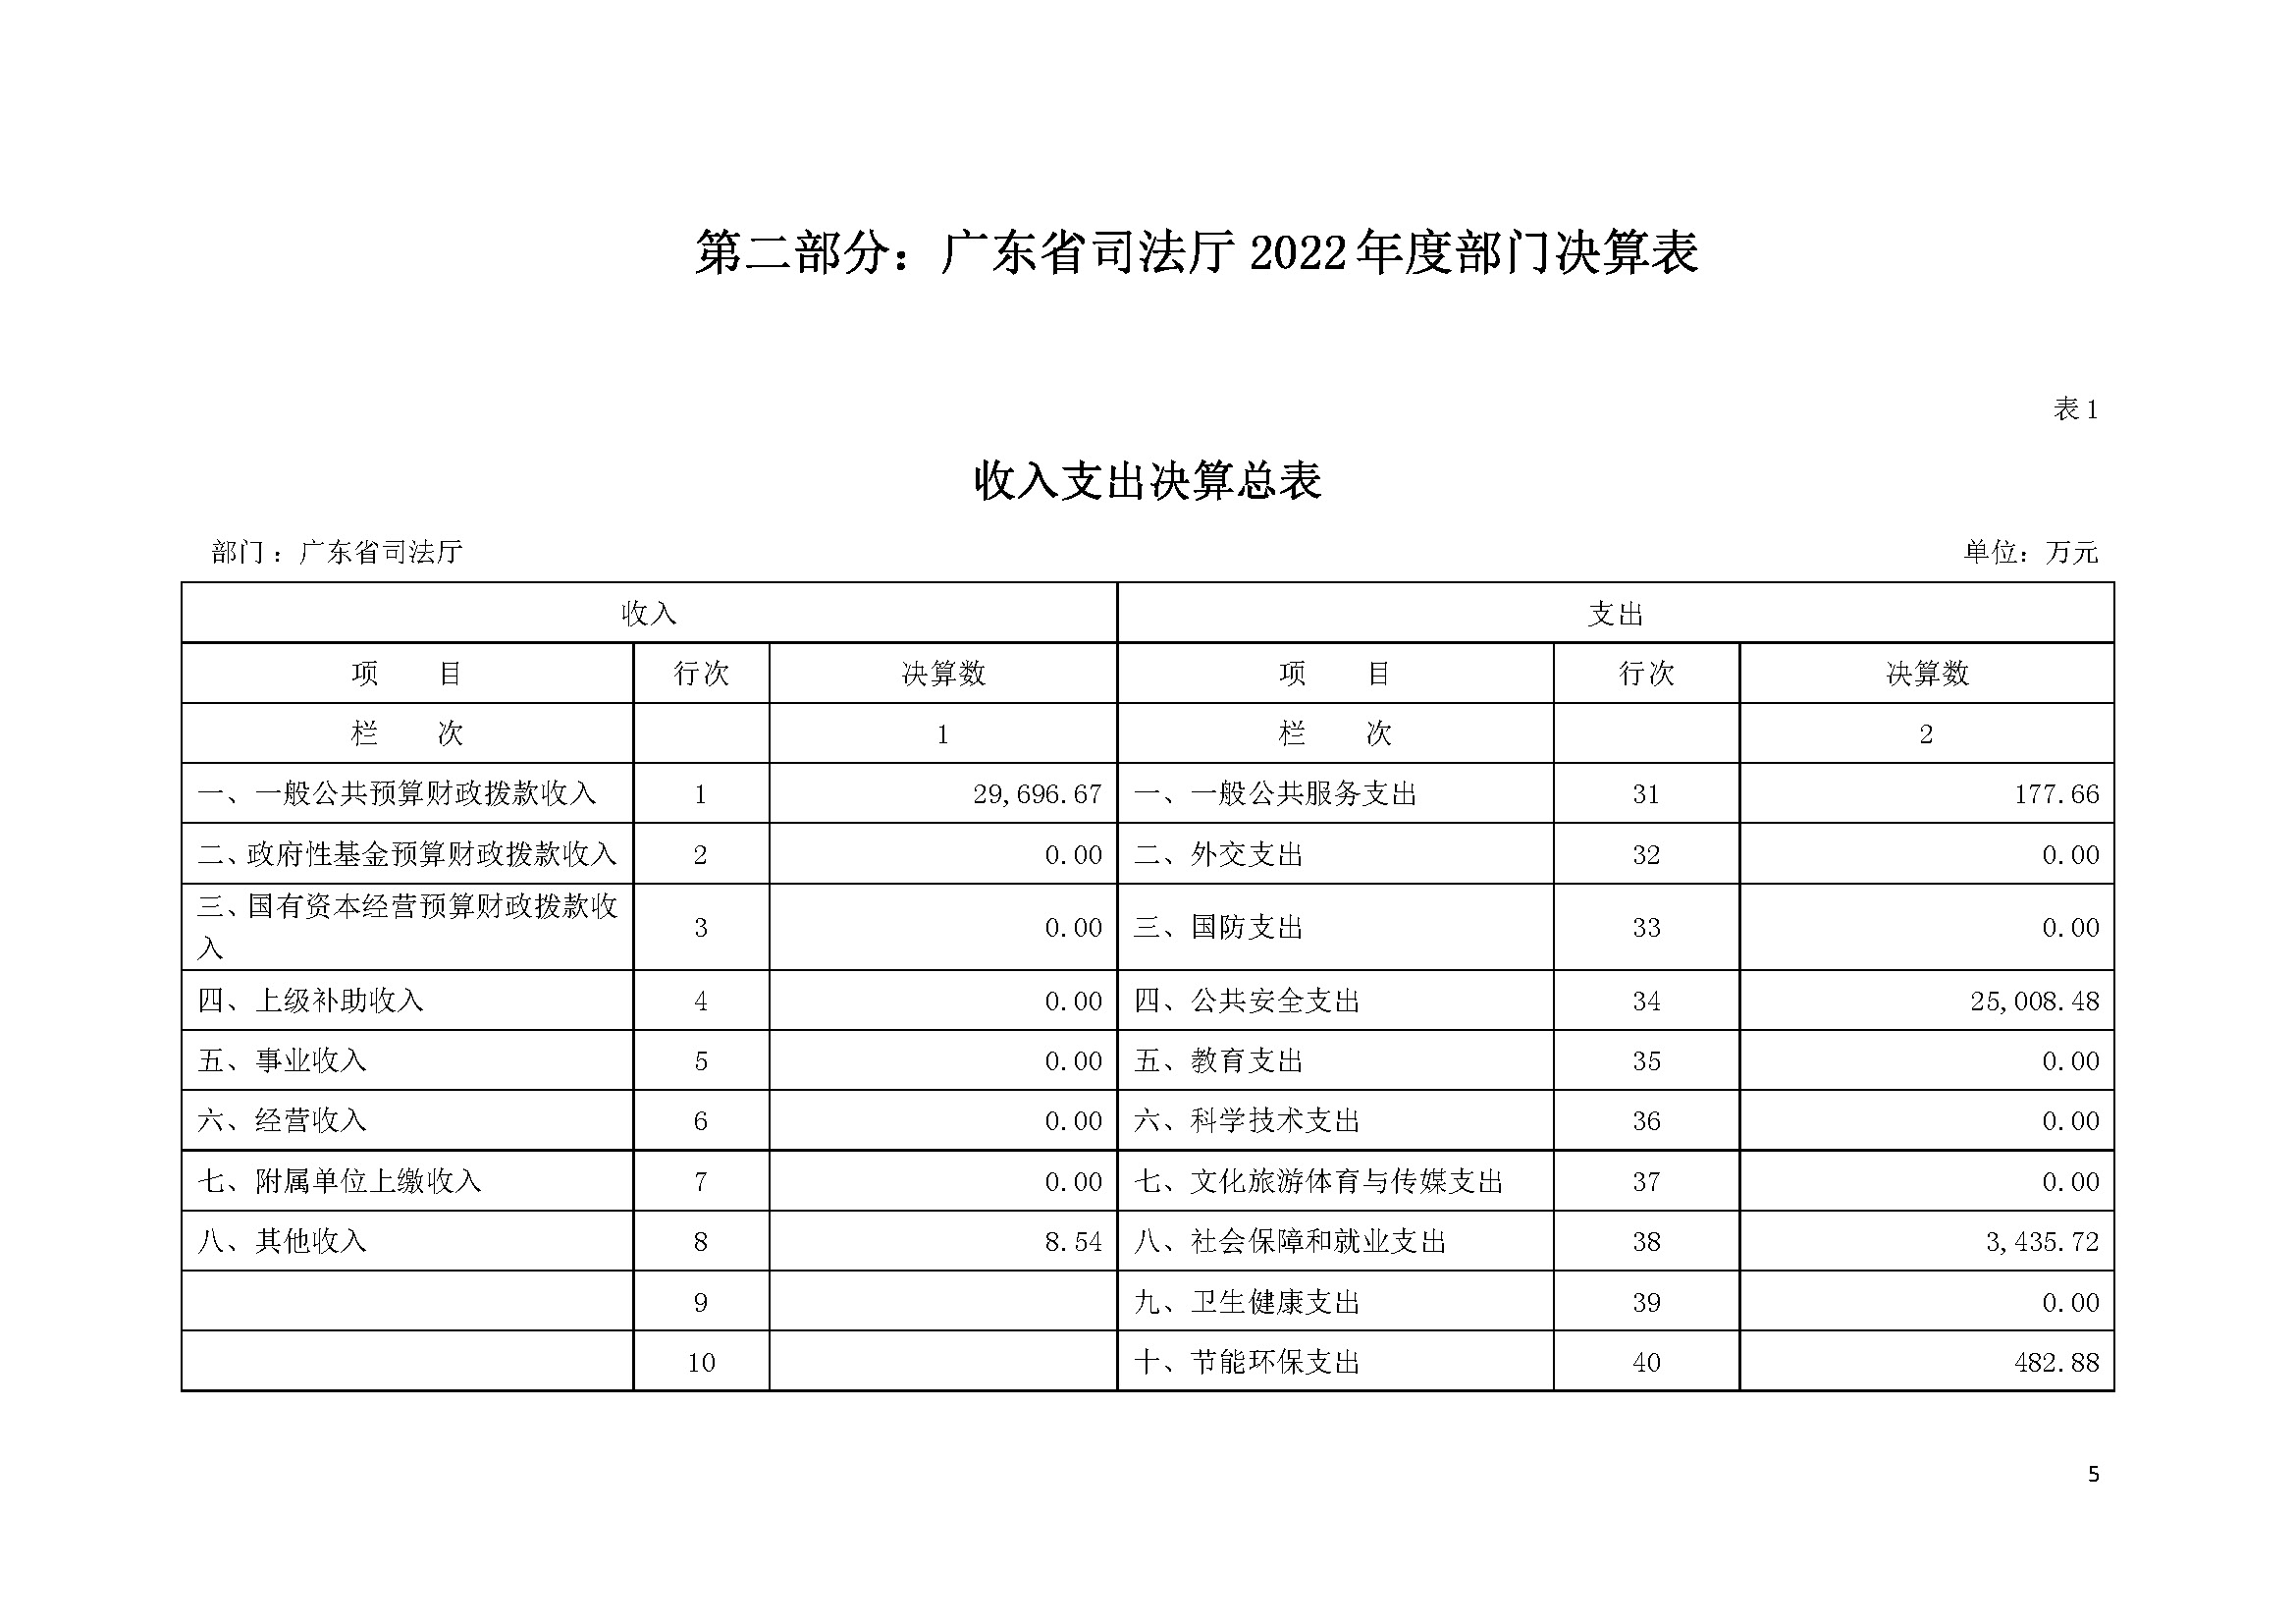 2022年度广东省司法厅部门决算__页面_05.jpg